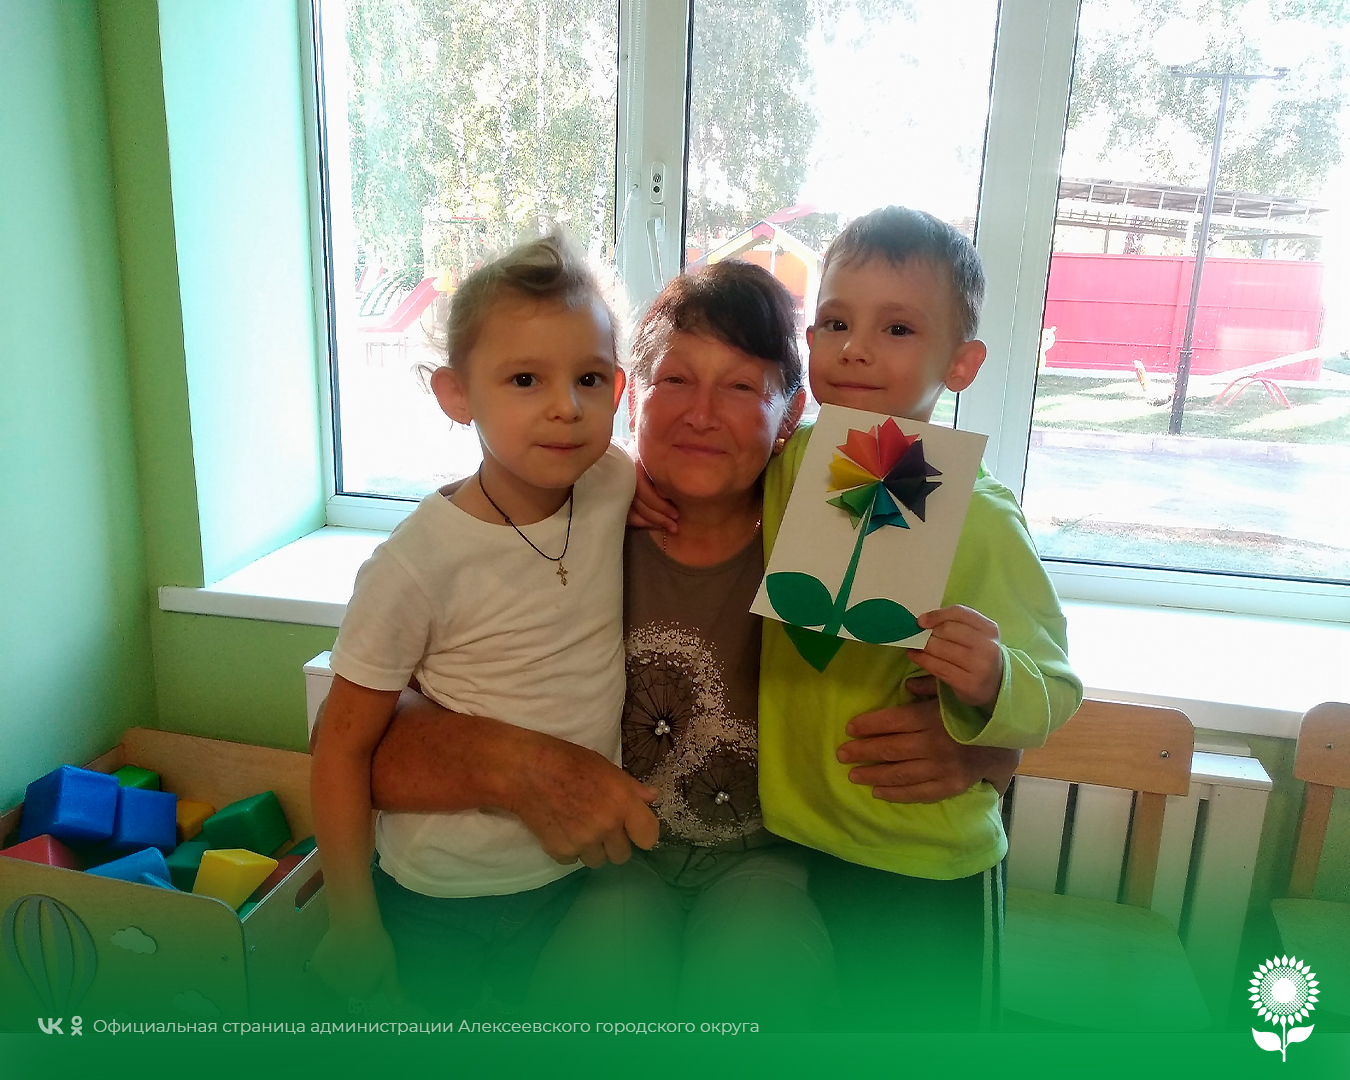 В детских садах Алексеевского городского округа прошёл День пожилых людей.